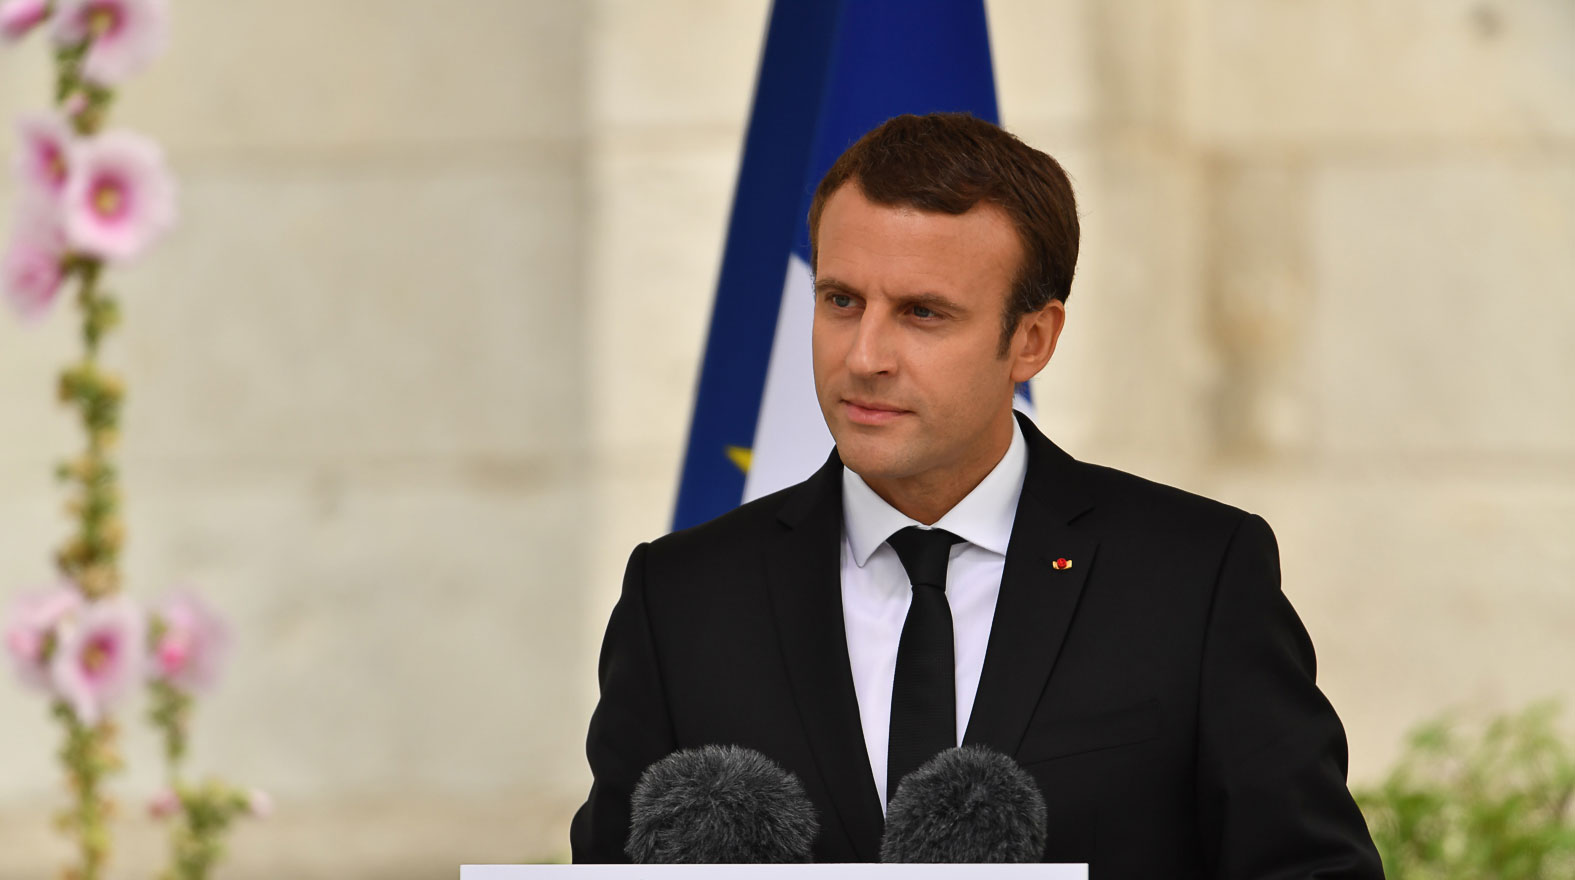 Шпионы пытались заразить компьютеры членов штаба кандидата в президенты Франции, используя ложные учетные записи в Facebook, сообщает агентство undefined